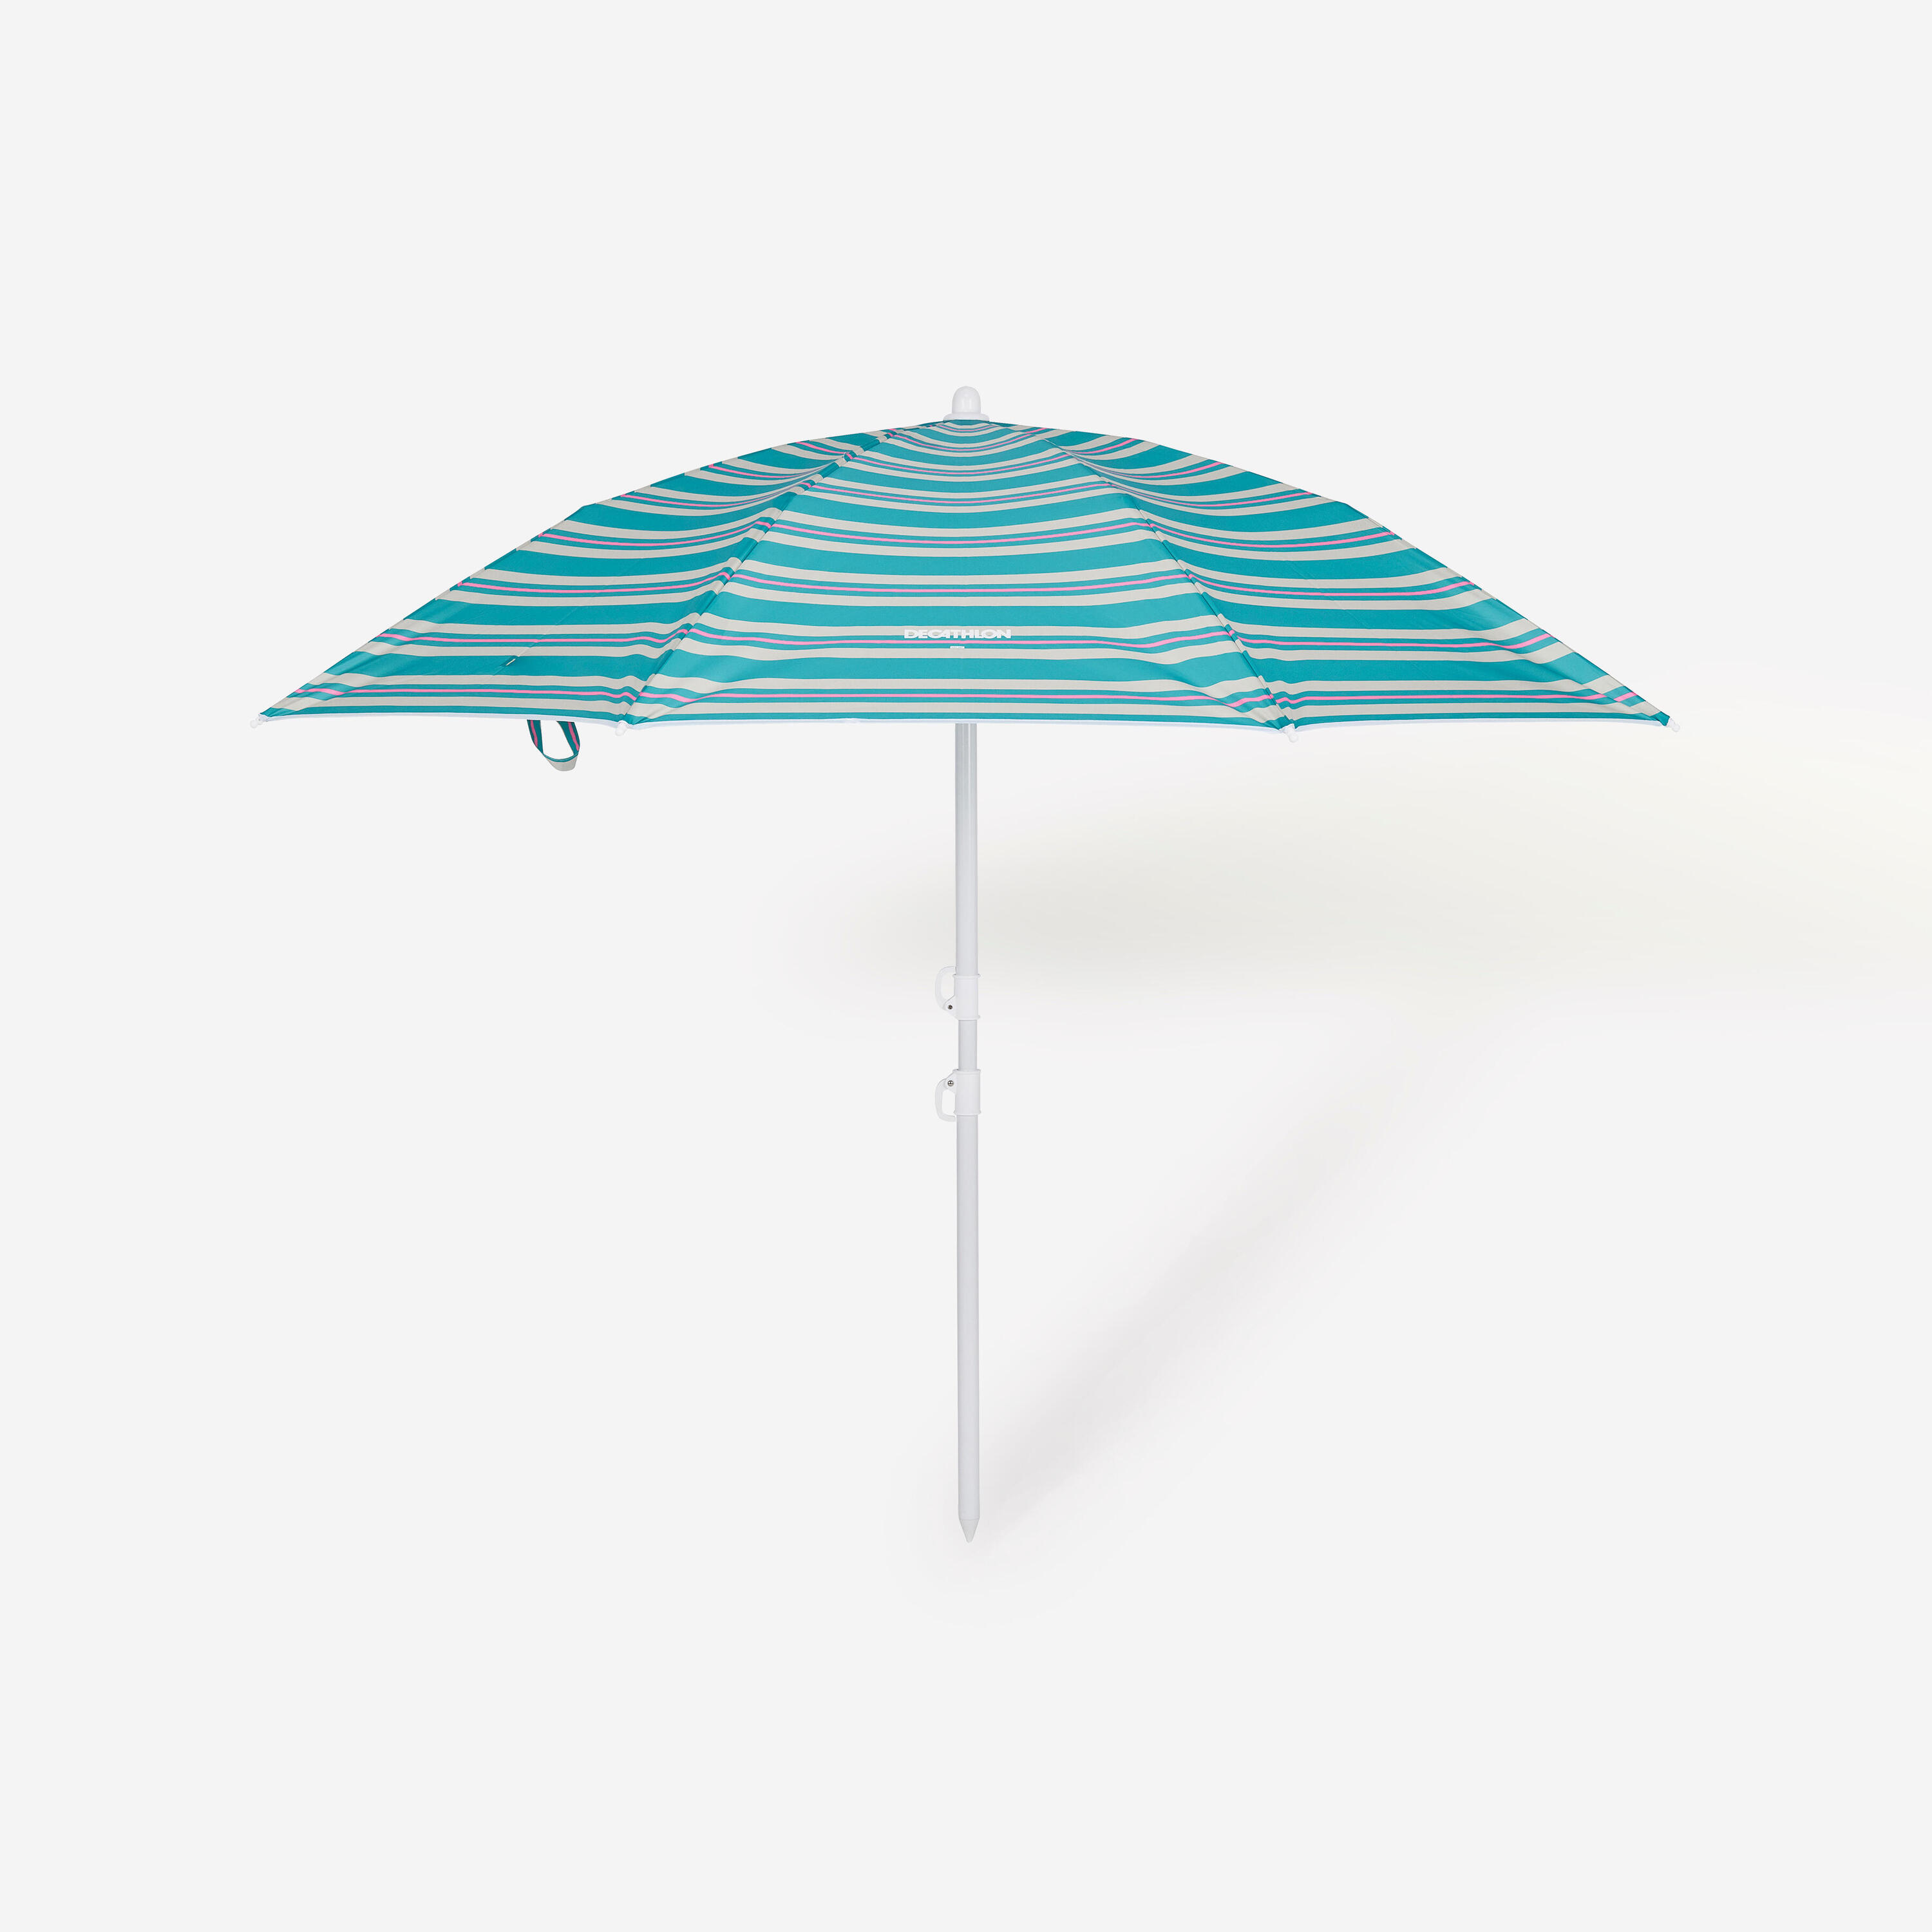 Compact beach umbrella 2 person UPF 50+ - Paruv 160 green stripe 8/8